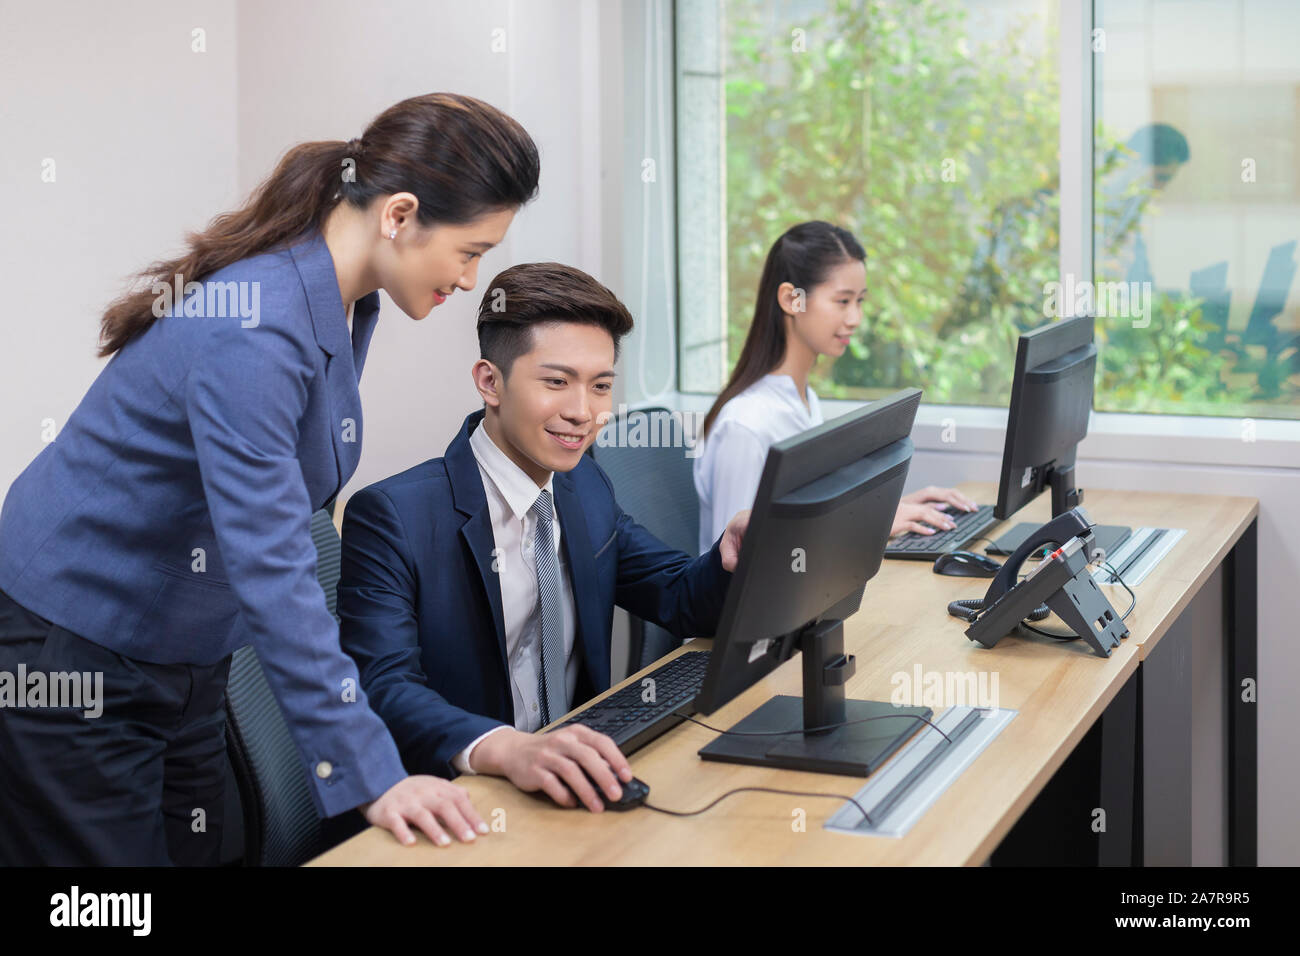 Zwei lächelnde junge männliche und weibliche Unternehmer auf der Suche nach einem Monitor von einem von Ihnen beim zusammen an einem Schreibtisch in einem Büro arbeiten Stockfoto